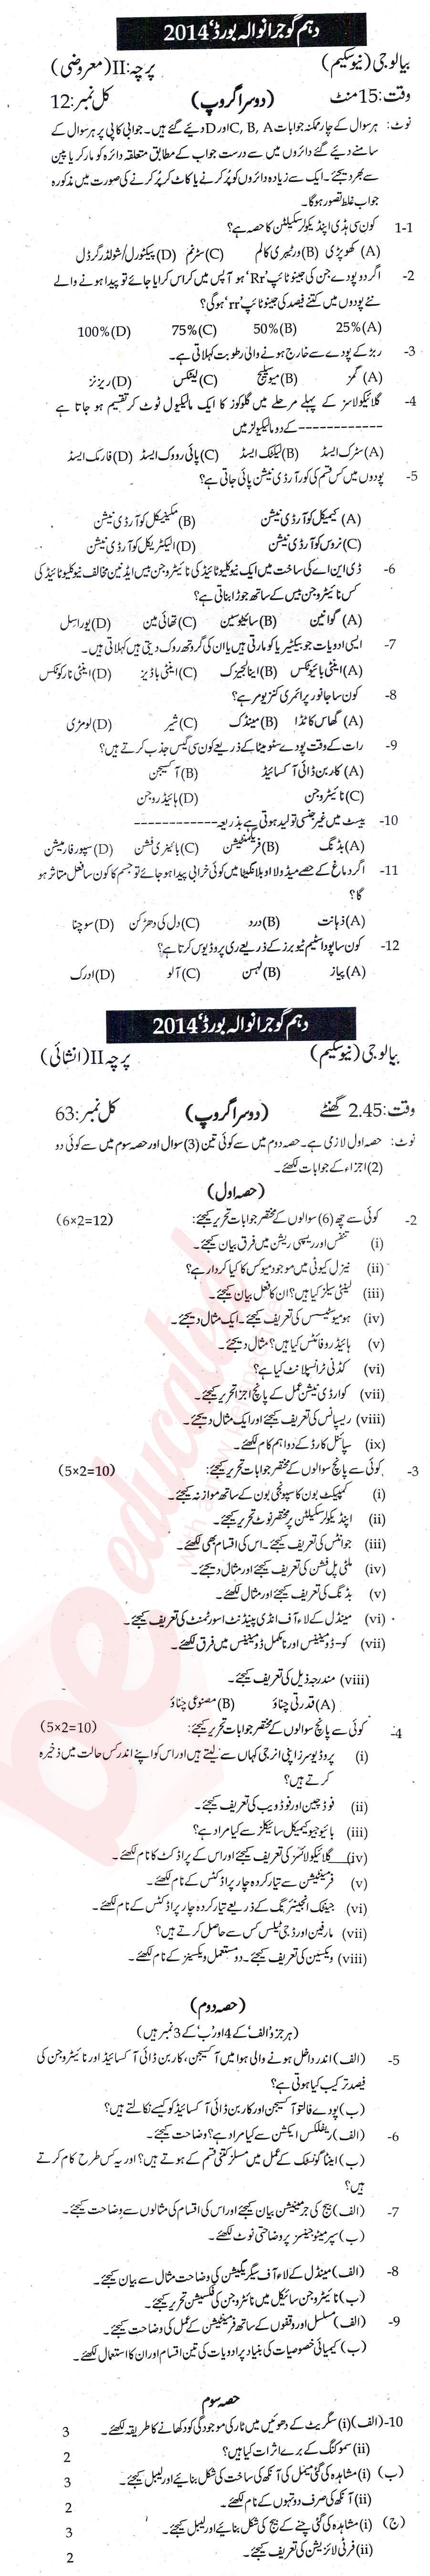 Biology 10th Urdu Medium Past Paper Group 2 BISE Gujranwala 2014